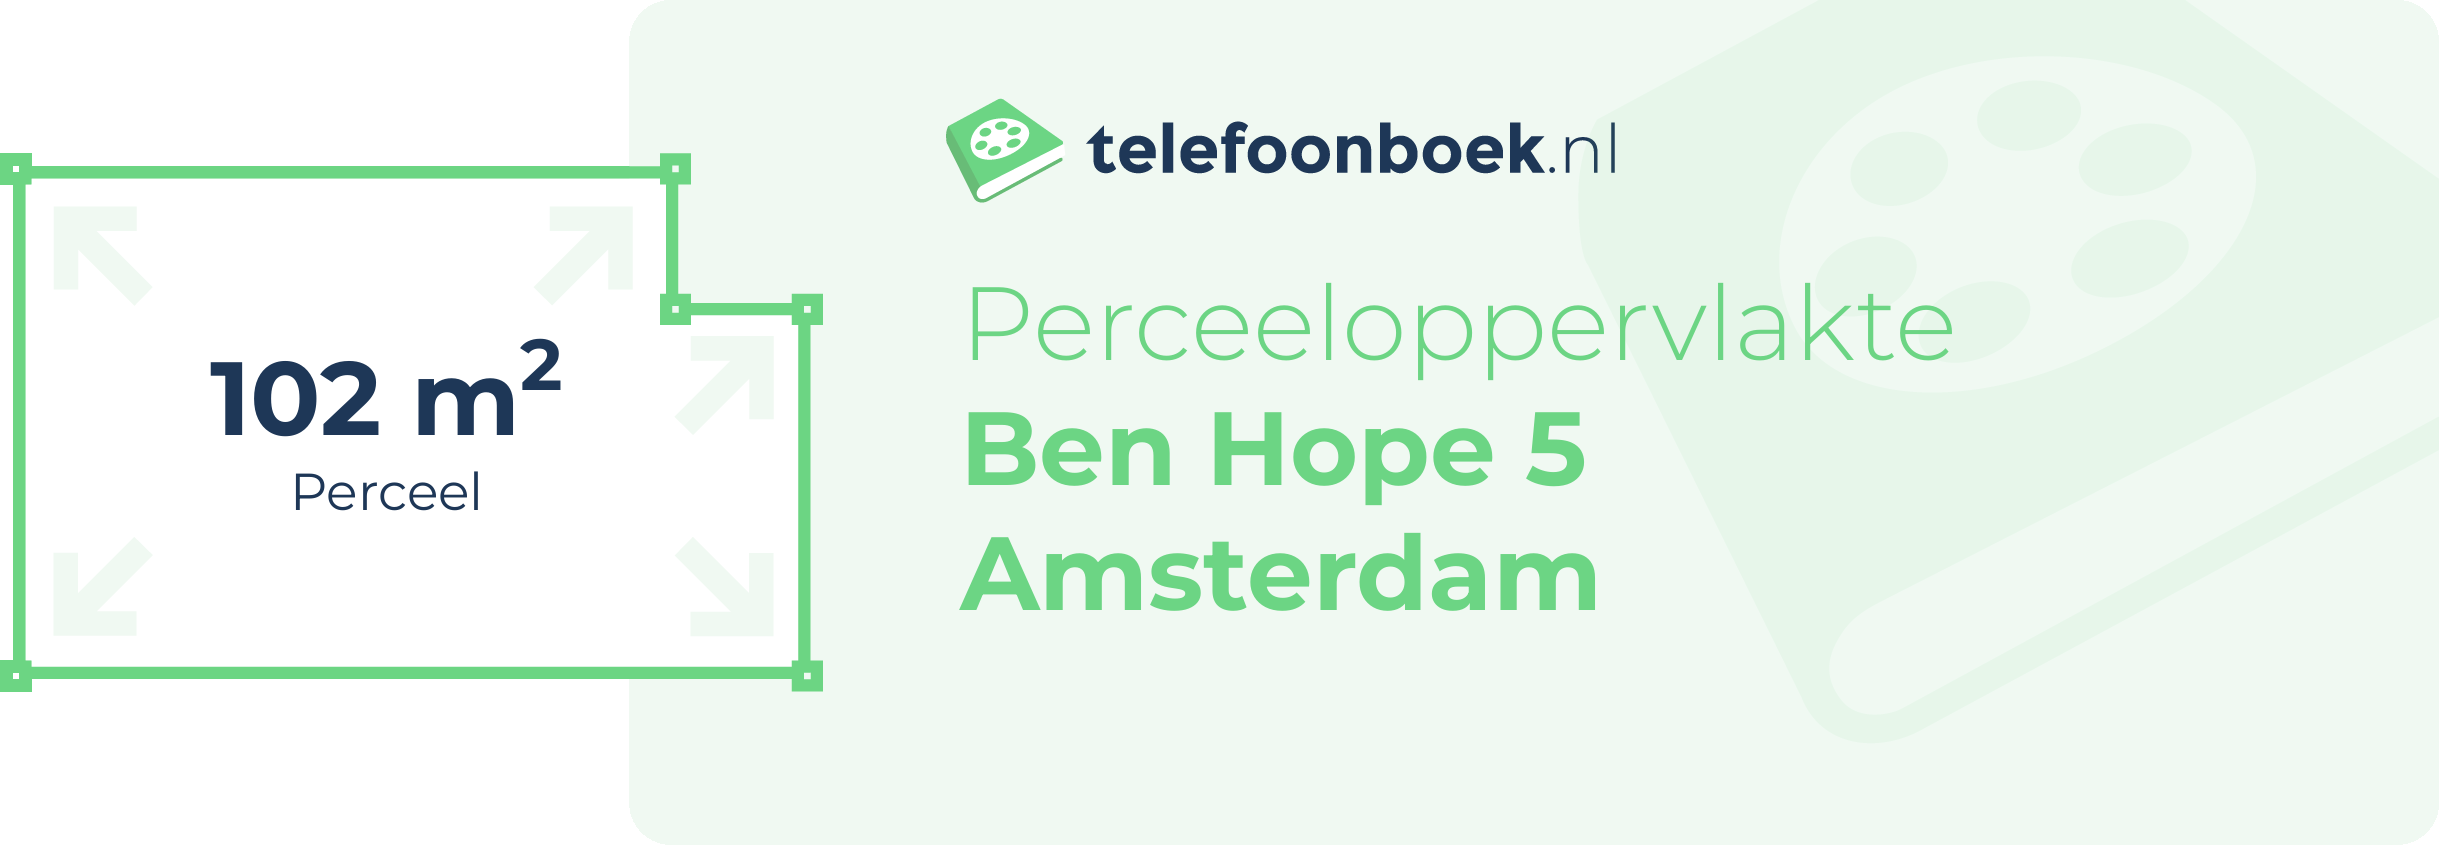 Perceeloppervlakte Ben Hope 5 Amsterdam